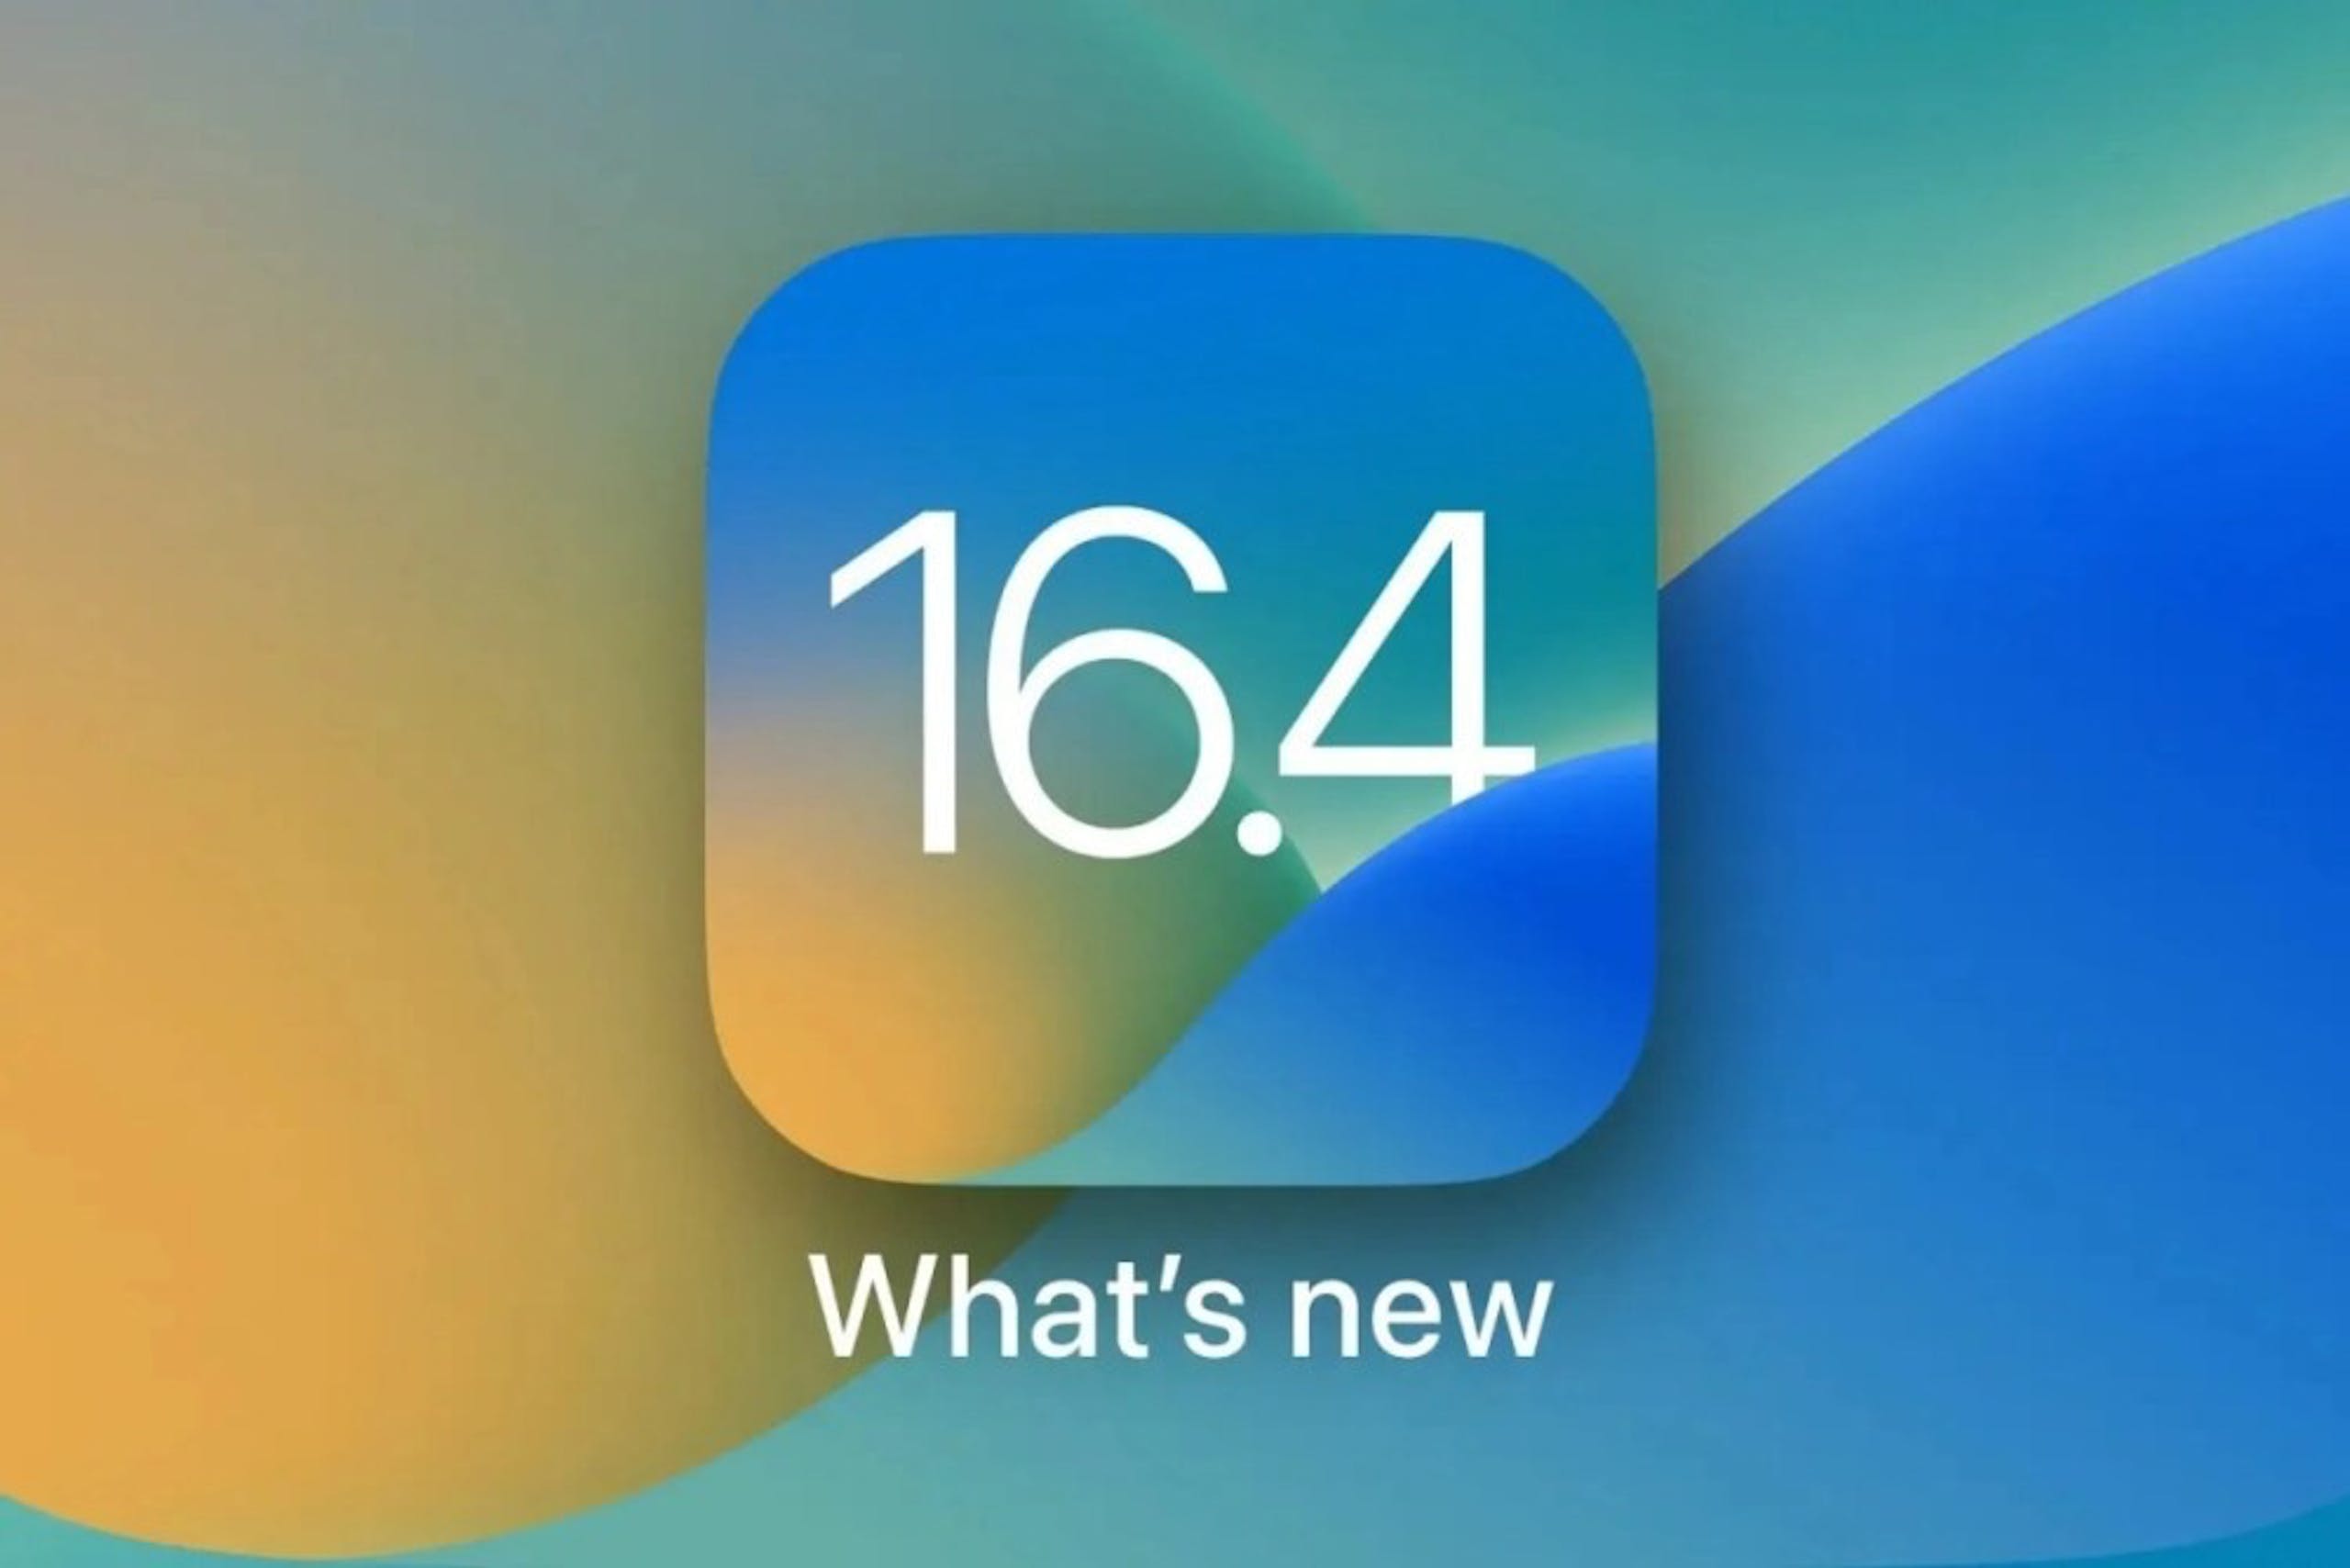 照片中提到了16.4、What's new，包含了iOS 16.4、的iOS、蘋果手機、iOS 16、蘋果